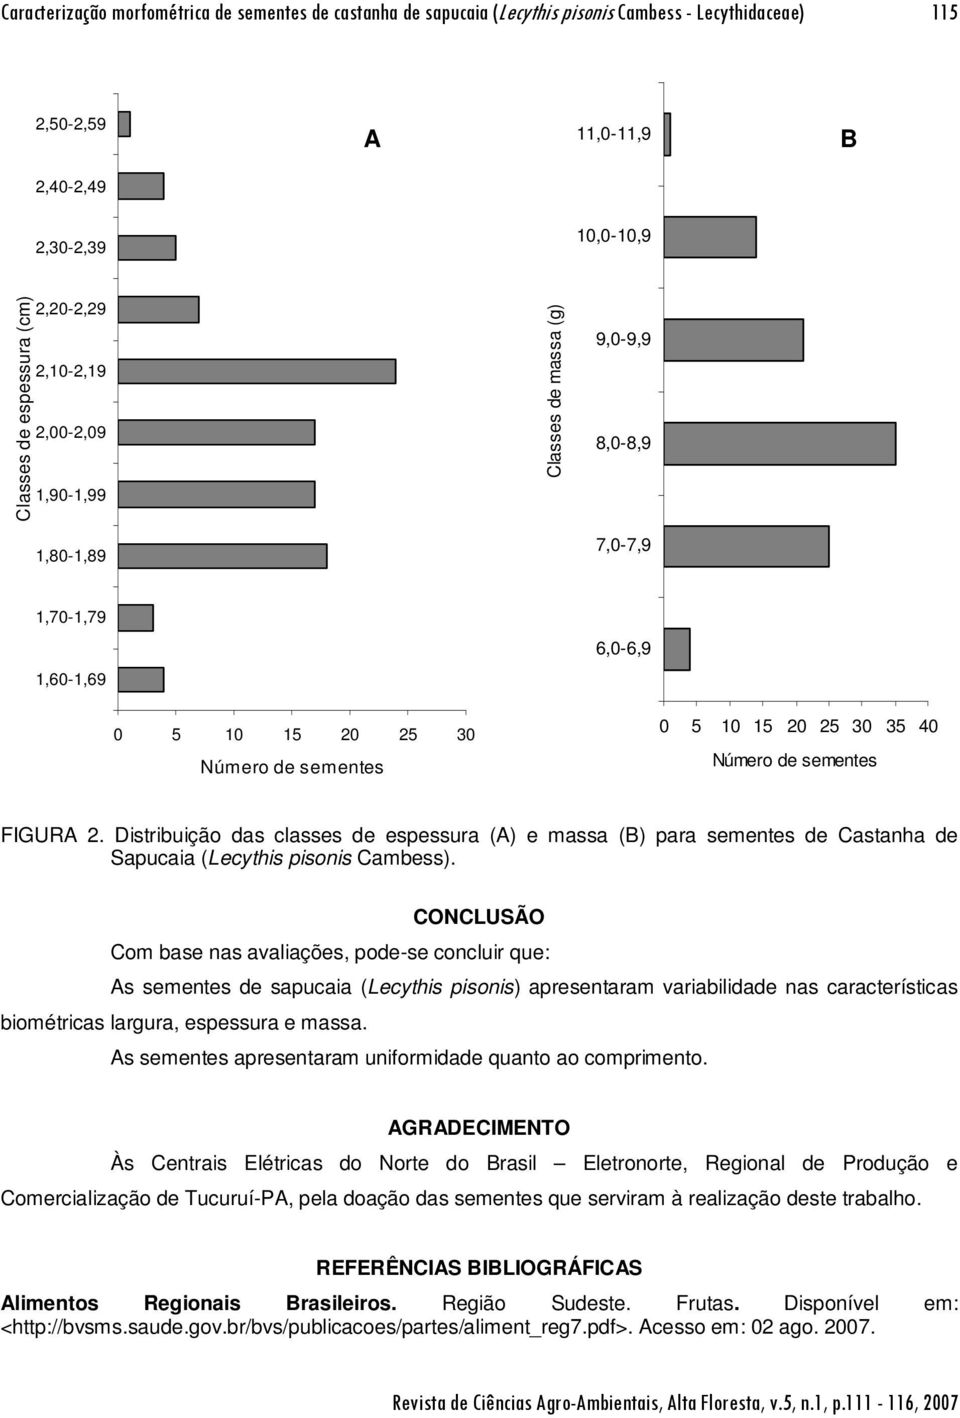 Distribuição das classes de espessura (A) e massa (B) para sementes de Castanha de Sapucaia (Lecythis pisonis Cambess).